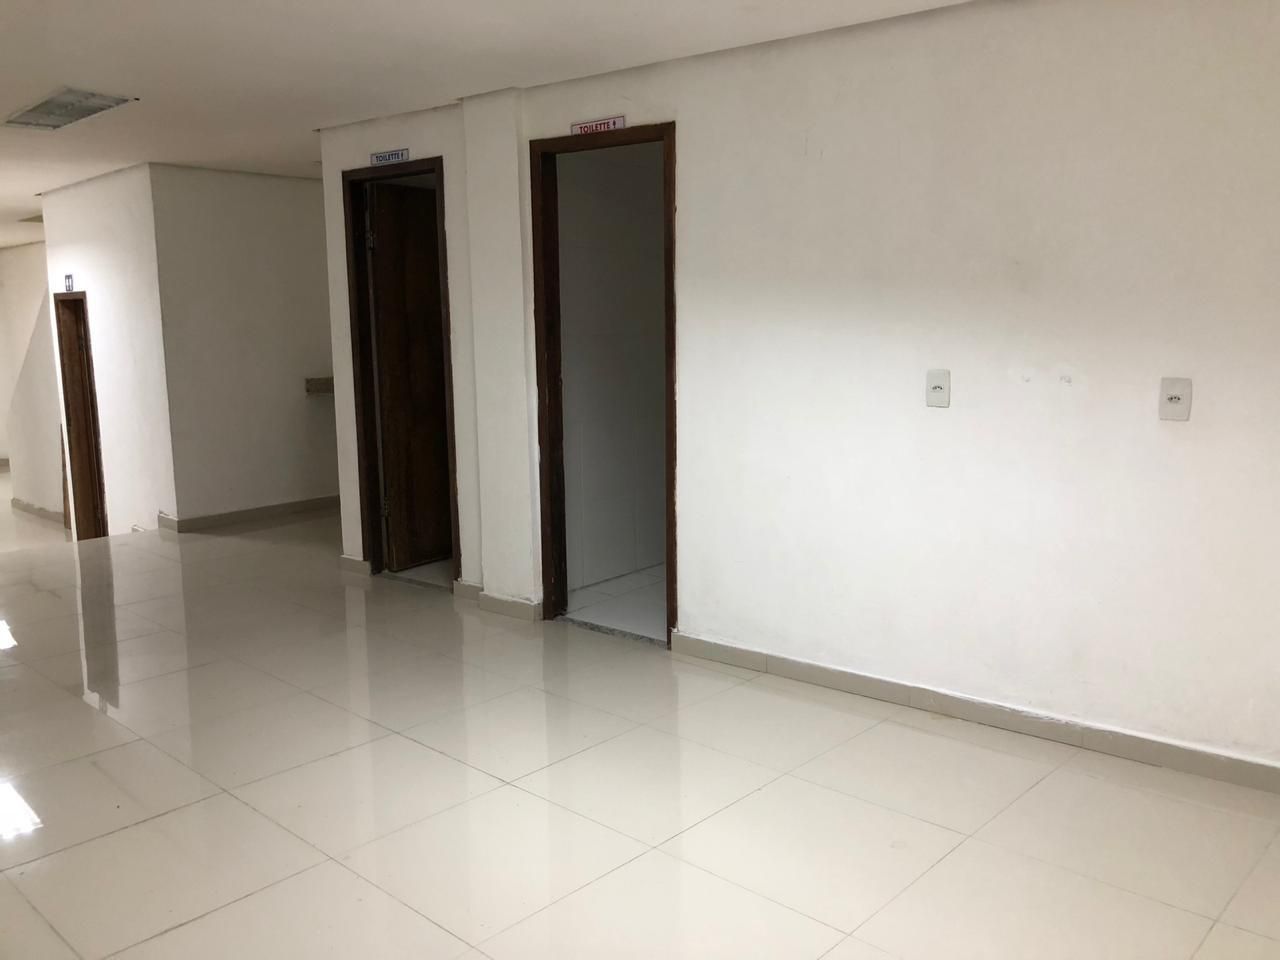 Prédio à venda, 500 m² por RS 1.200.000,00 - Centro - Manaus-AM